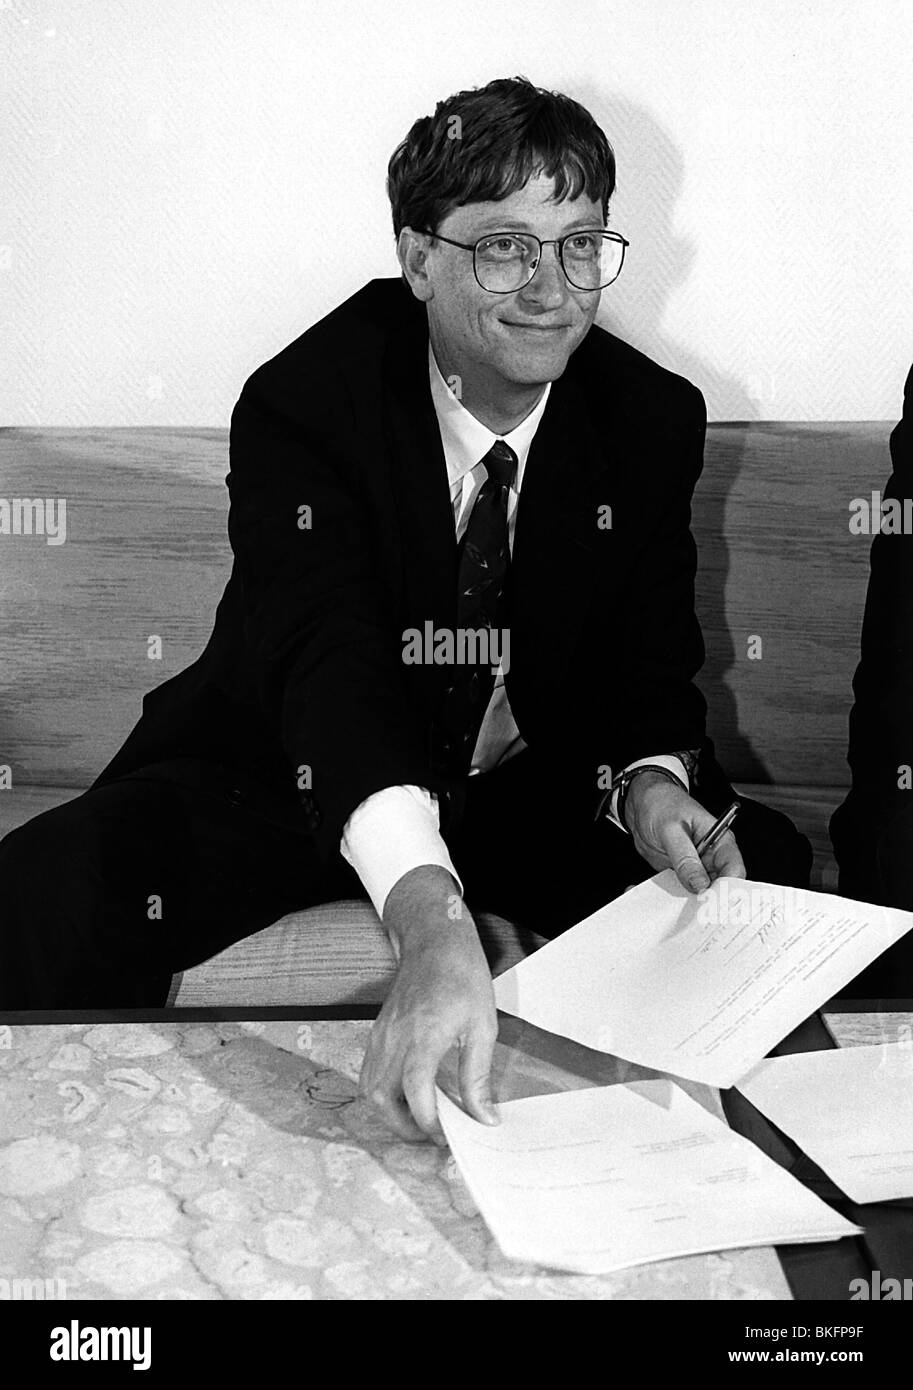 Gates, William Henry 'Bill', * 28.10.1955, magnate commerciale degli Stati Uniti, fondatore della società MICROSOFT, half length, 1992, Foto Stock